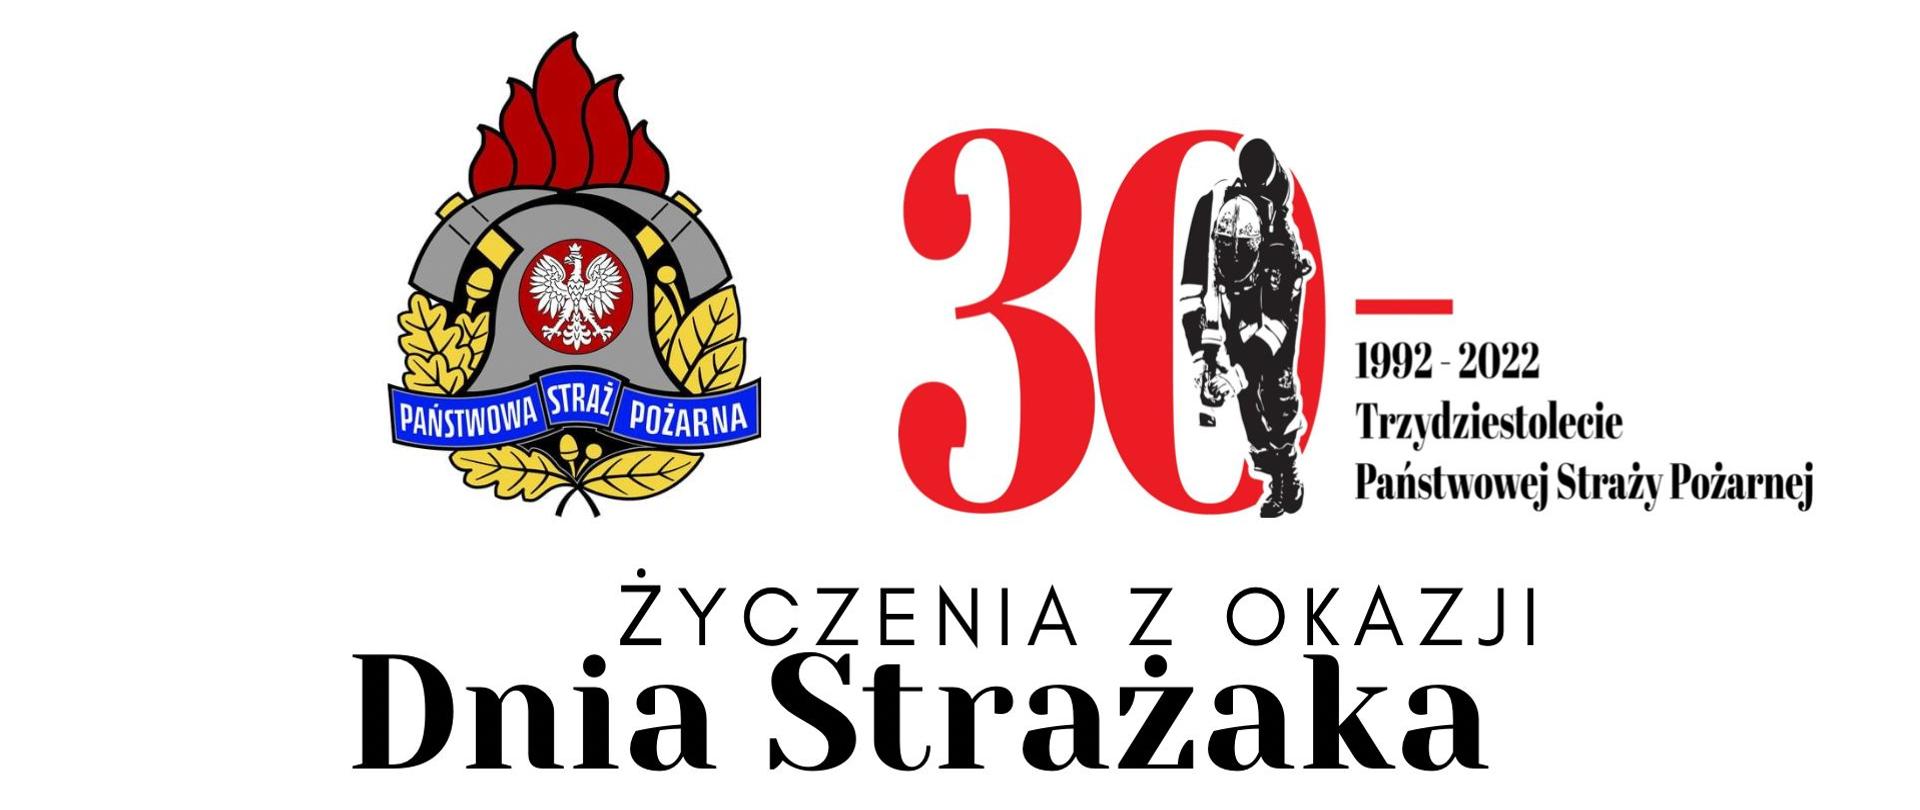 Logo Państwowej Straży Pożarnej i obchodów trzydziestolecia formacji.